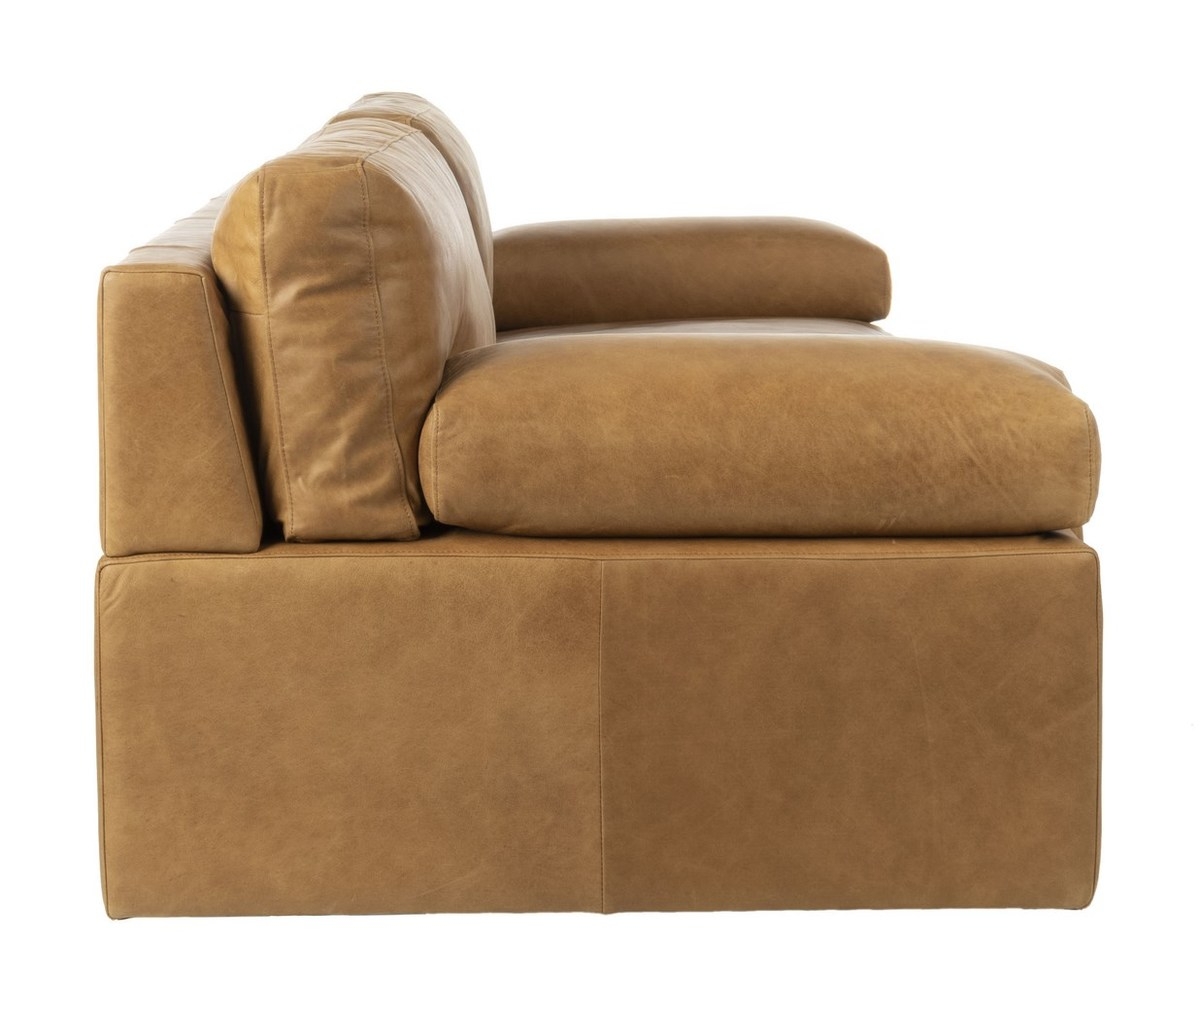 Osma Italian Leather Sofa, Caramel - Image 5